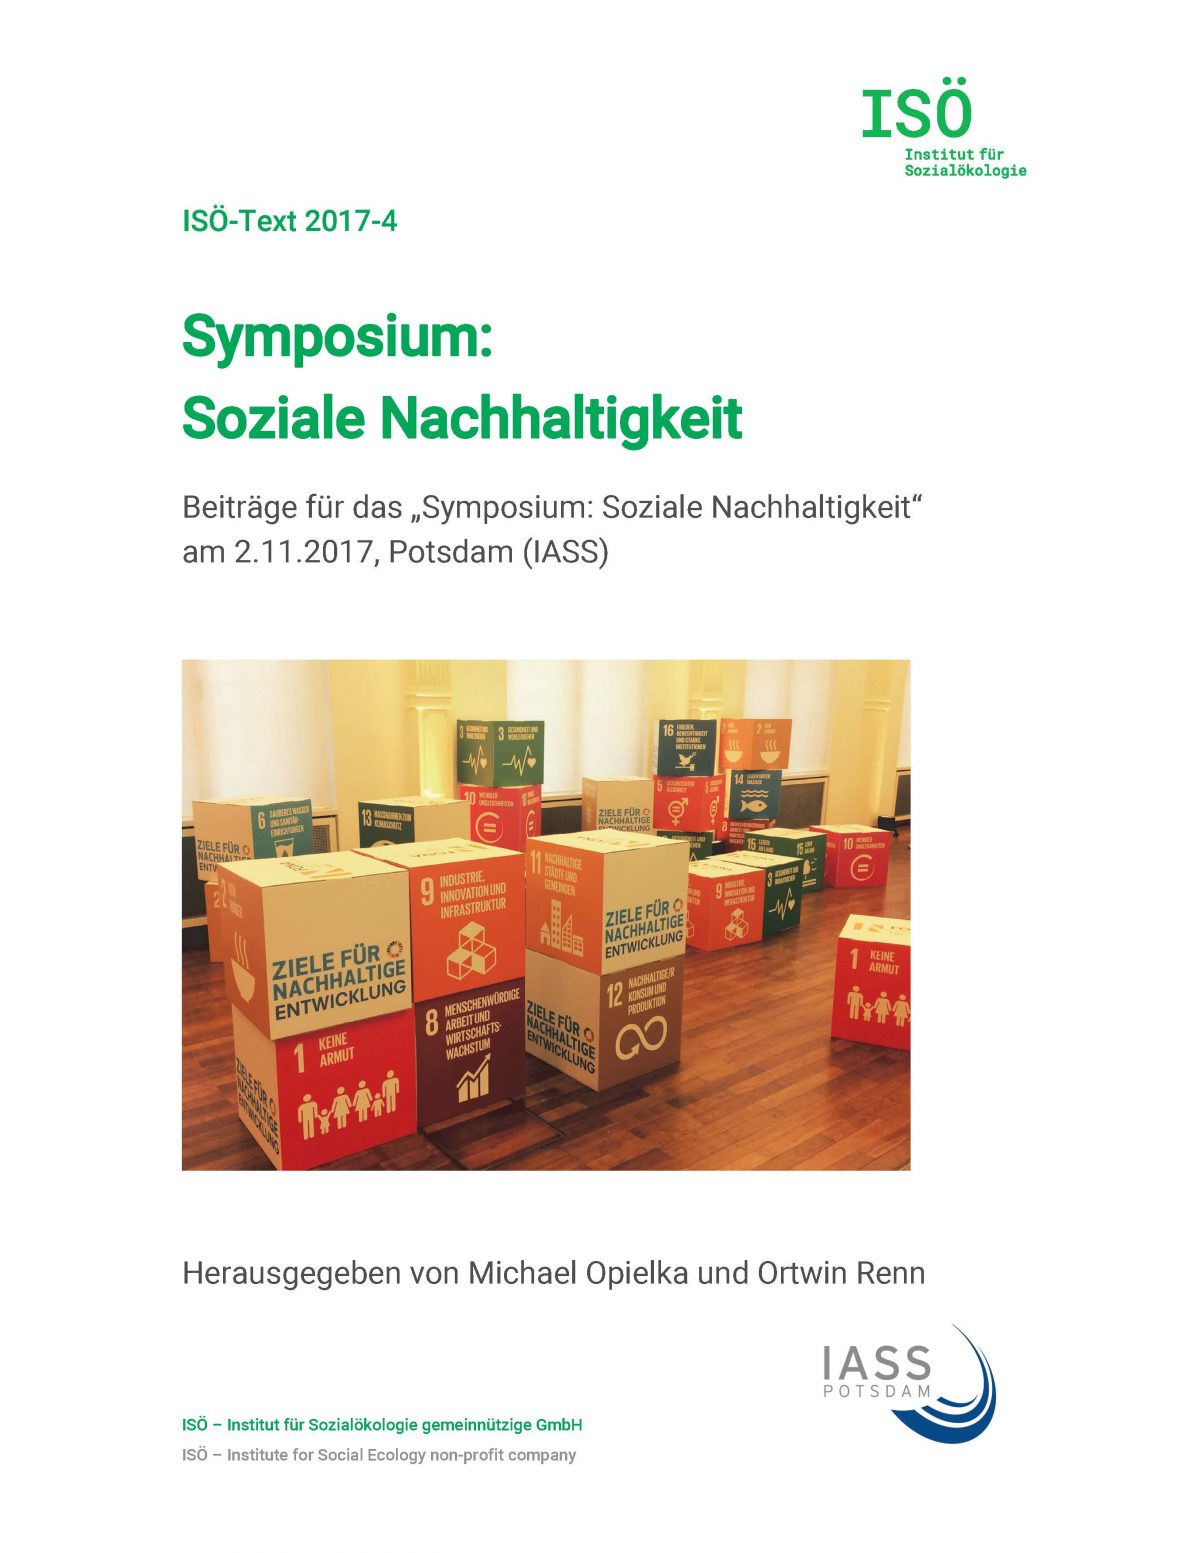 Michael Opielka/Ortwin Renn (Hrsg.), Symposium: Soziale Nachhaltigkeit. Beiträge für das „Symposium: Soziale Nachhaltigkeit“ am 2.11.2017, Potsdam (IASS) (ISÖ-Text 2017-4) 